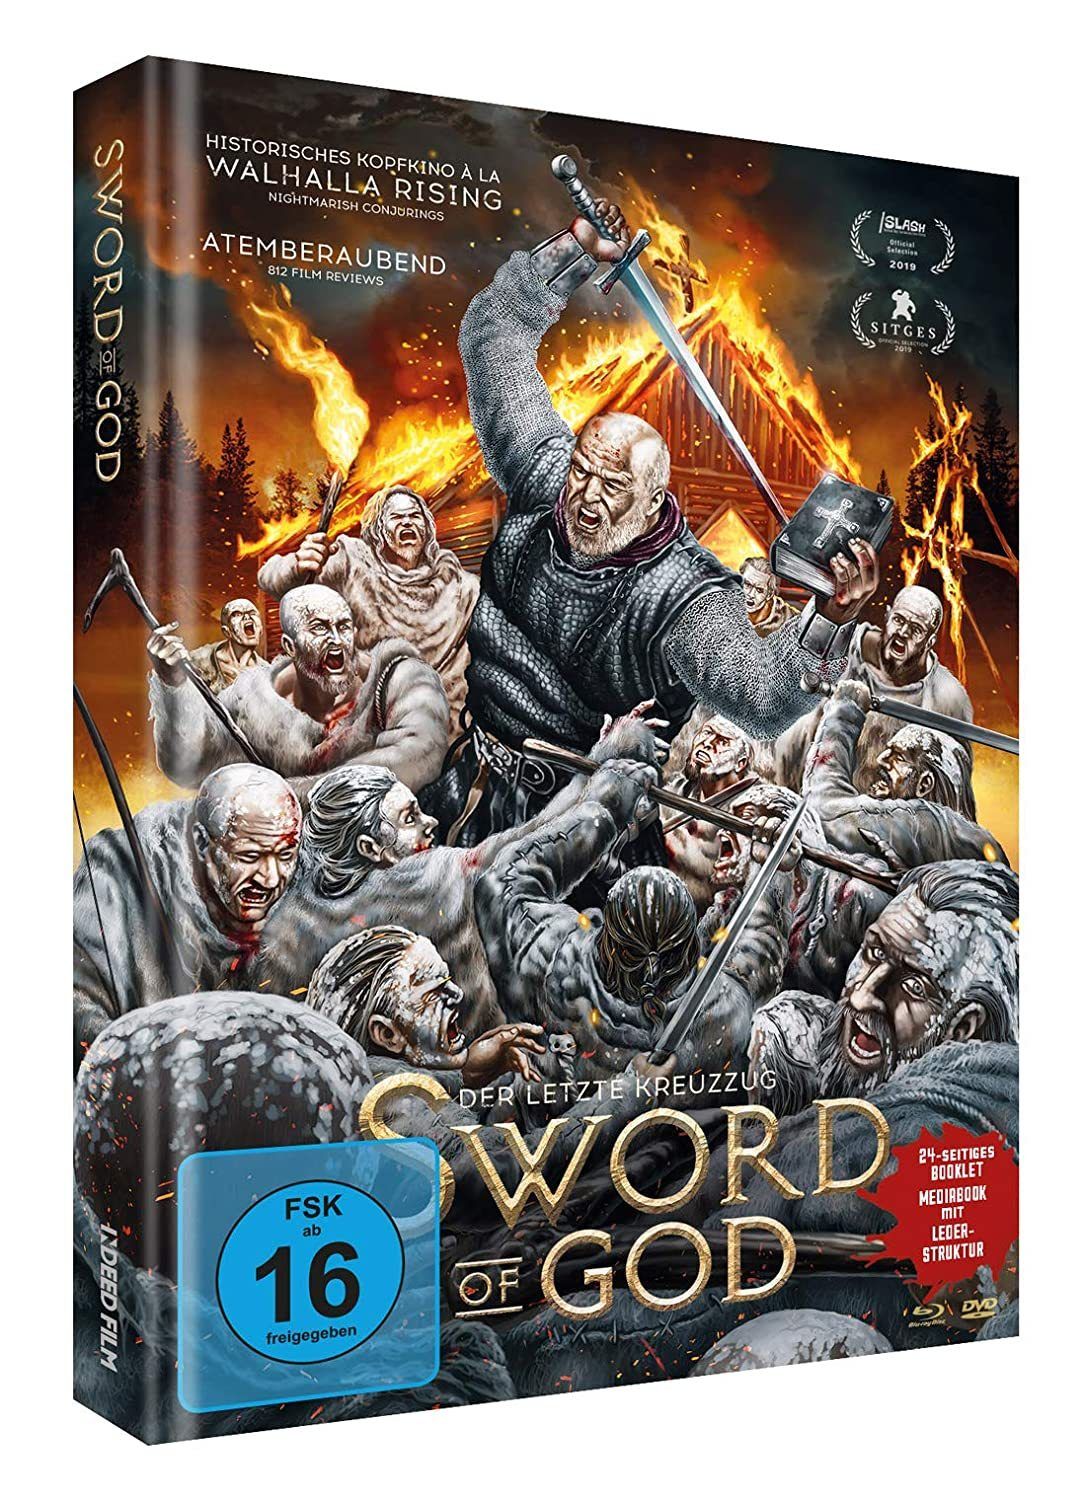 Image of Sword of God - Der letzte Kreuzzug Limited Mediabook